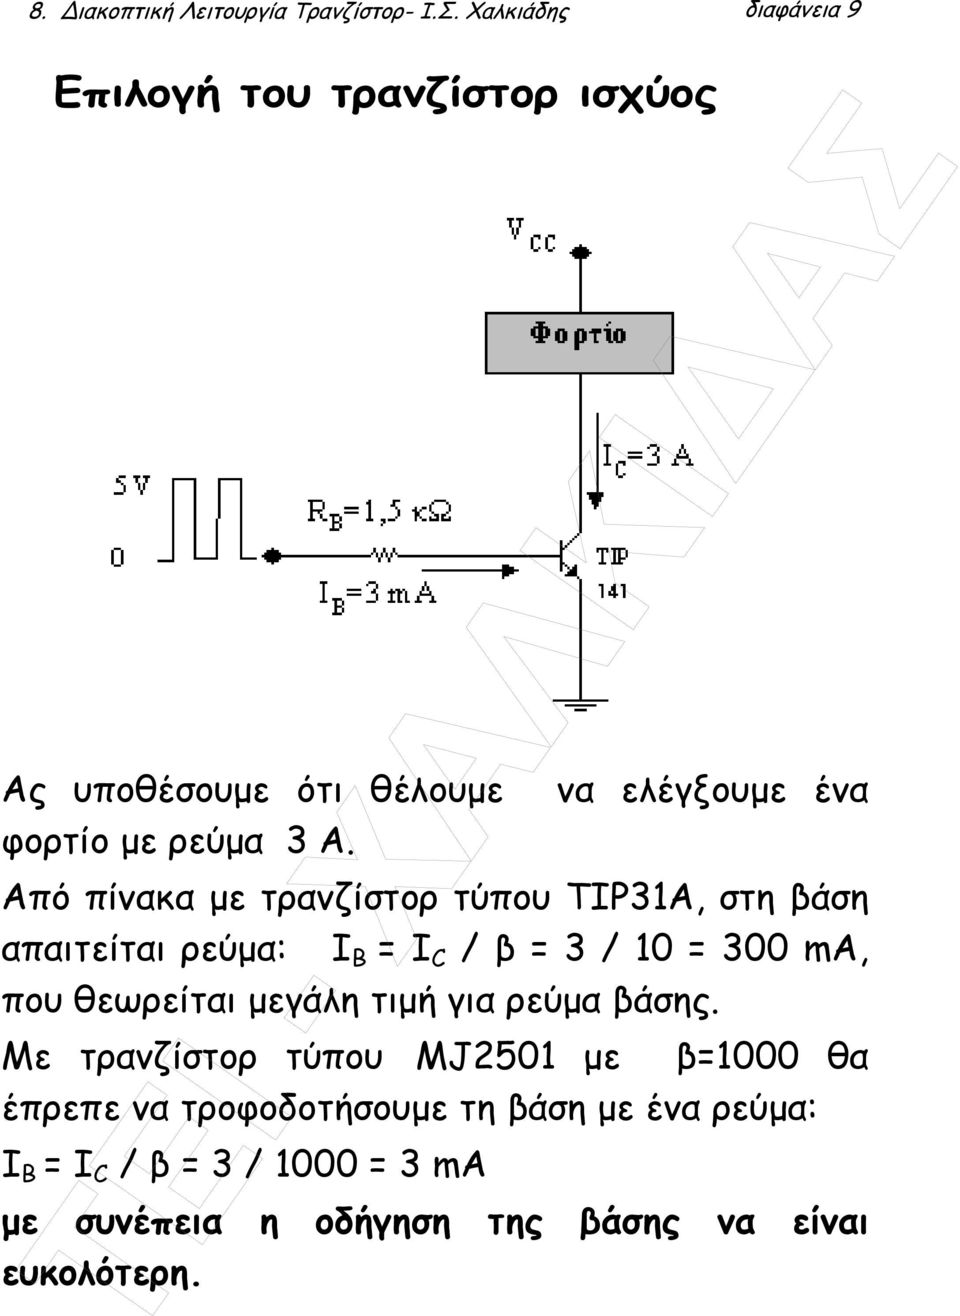 Από πίνακα µε τρανζίστορ τύπου TIP31A, στη βάση απαιτείται ρεύµα: Ι B = I C / β = 3 / 10 = 300 ma, που θεωρείται